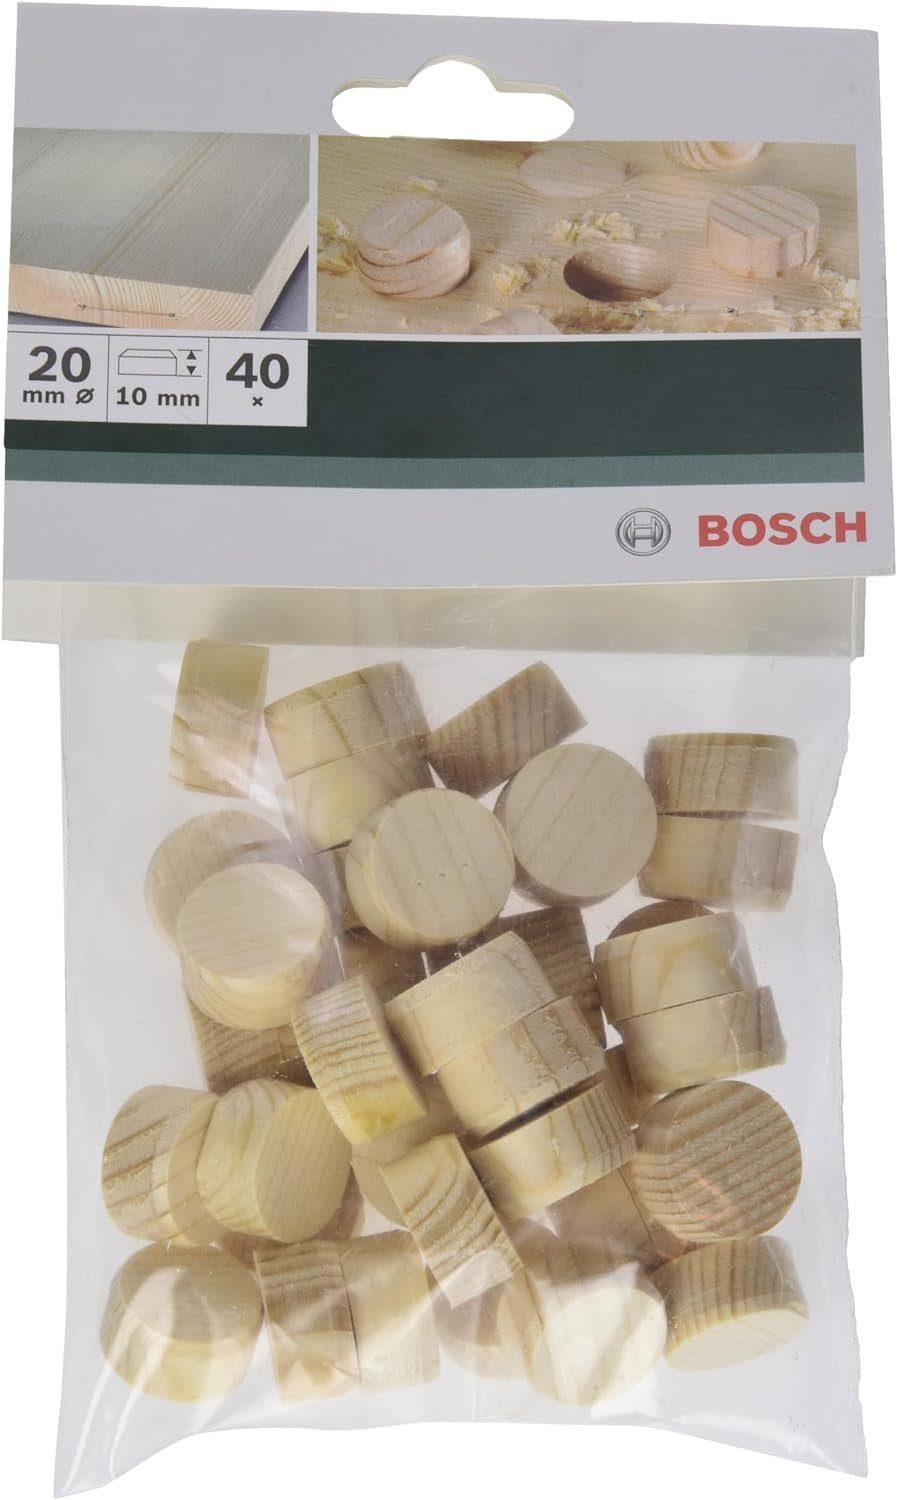 BOSCH Bohrfutter Bosch Holzzapfen Ø 20 mm 40 Stk